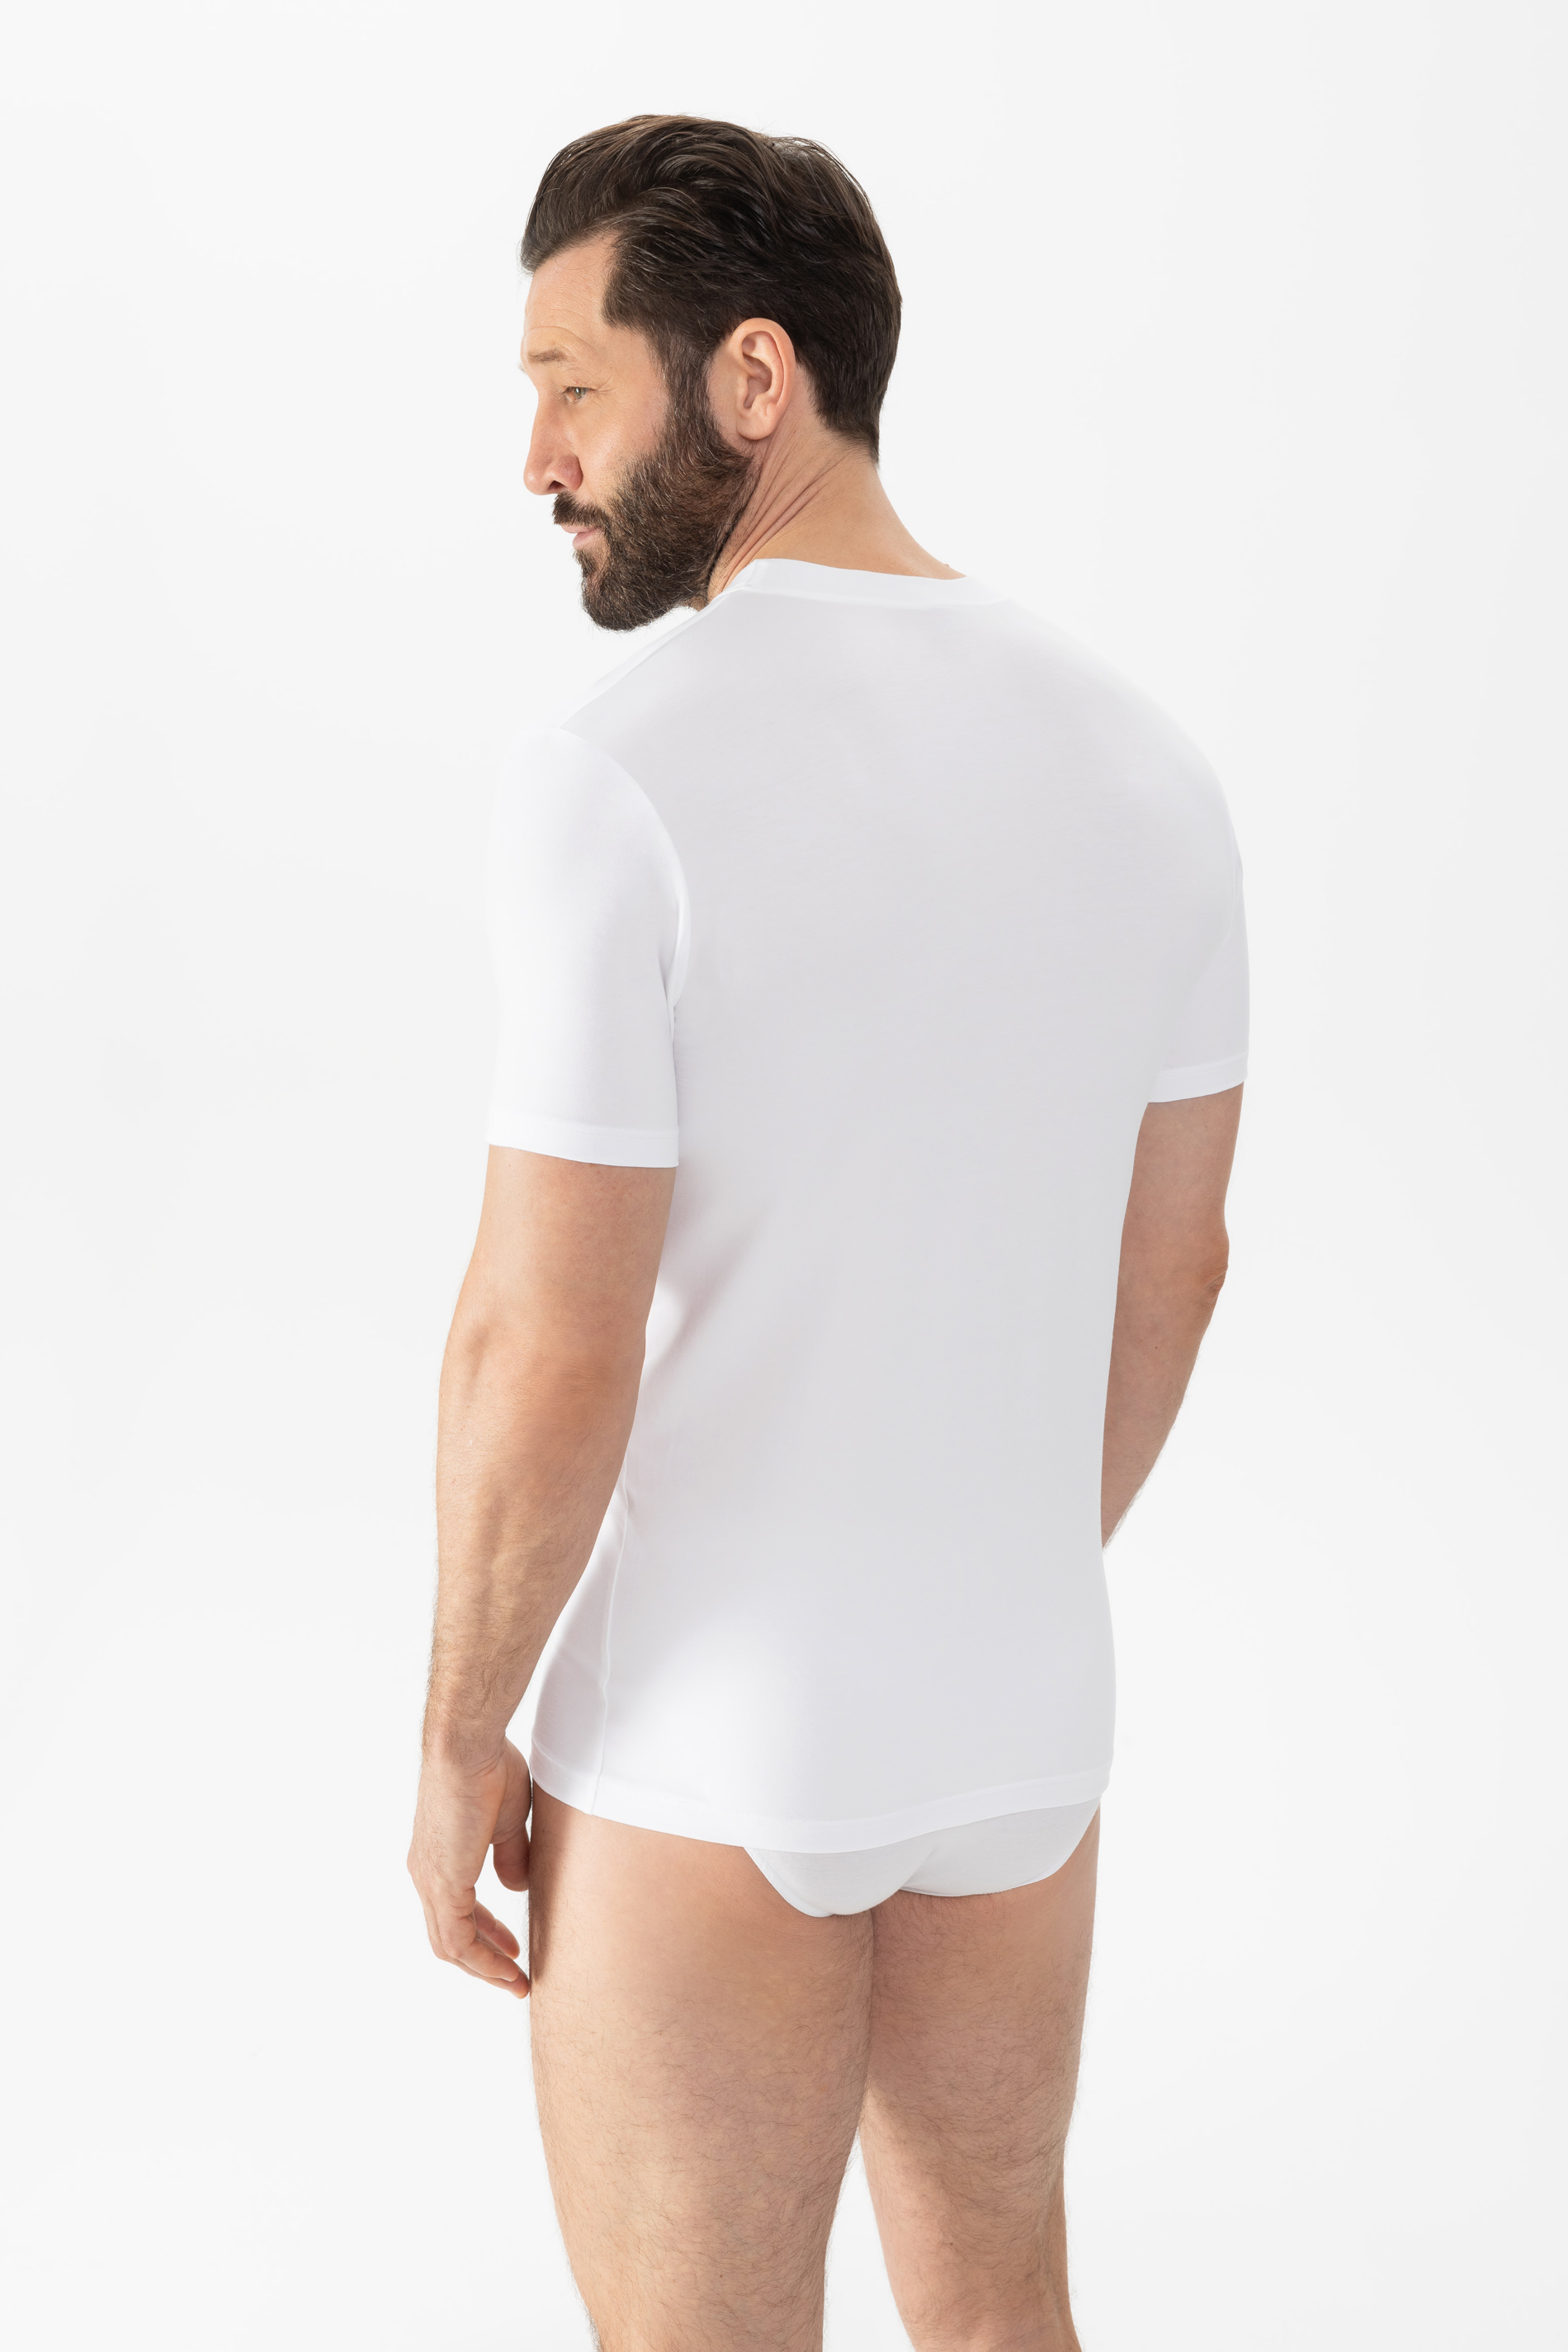 Shirt Wit Serie Dry Cotton Achteraanzicht | mey®